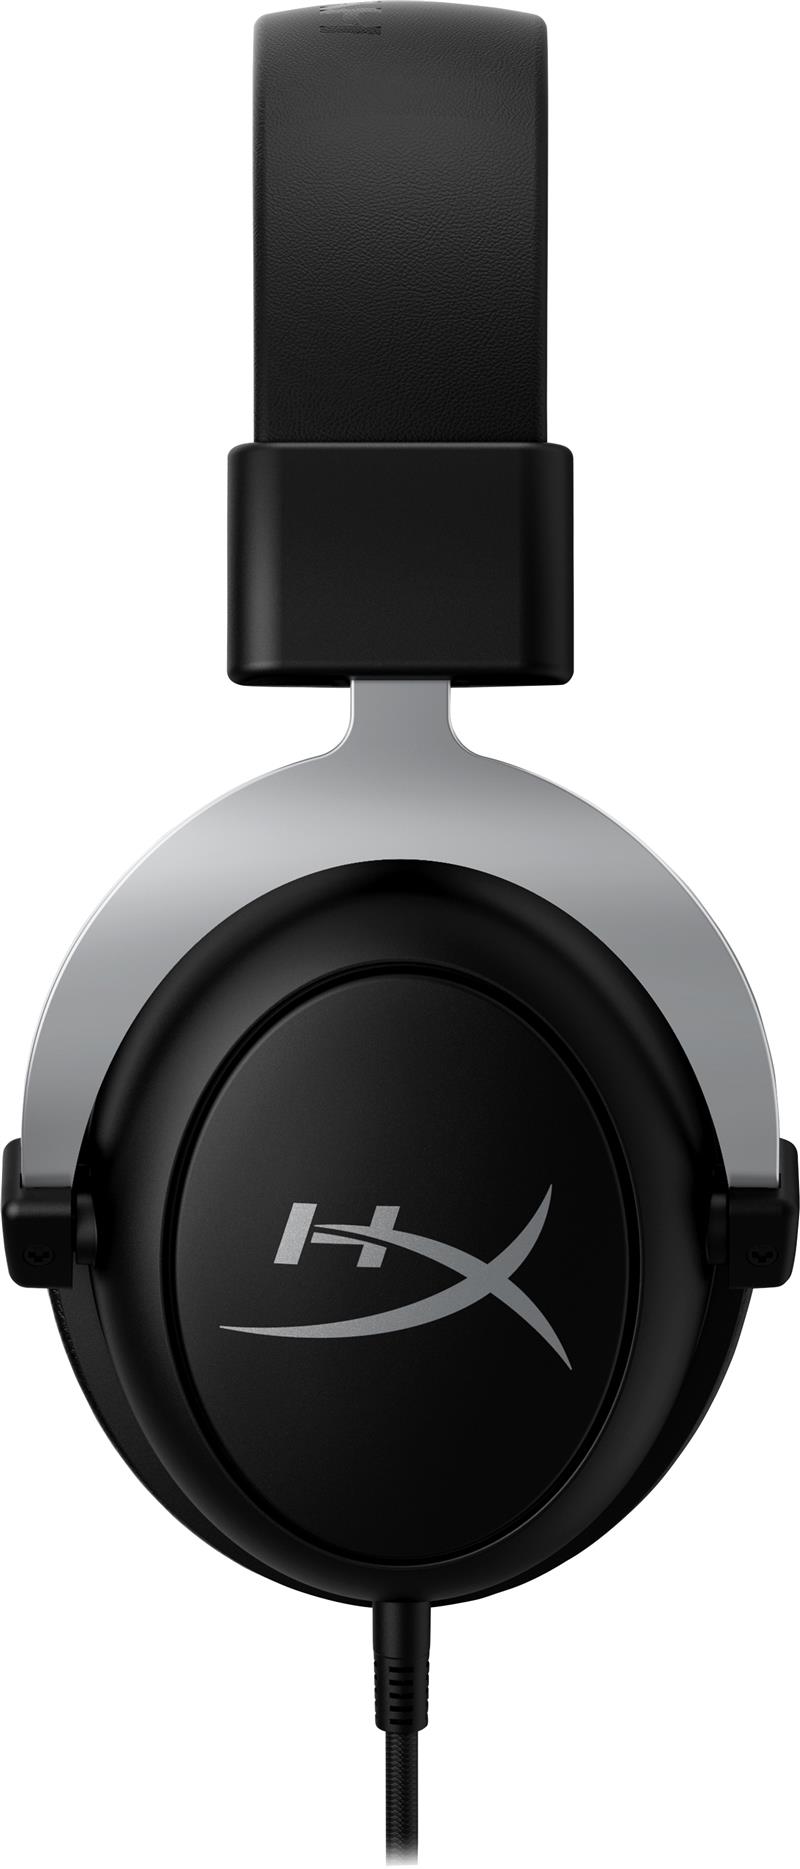 HyperX CloudX - Gaming Headset (Black-Silver) - Xbox Bedraad Hoofdband Gamen Zwart, Zilver